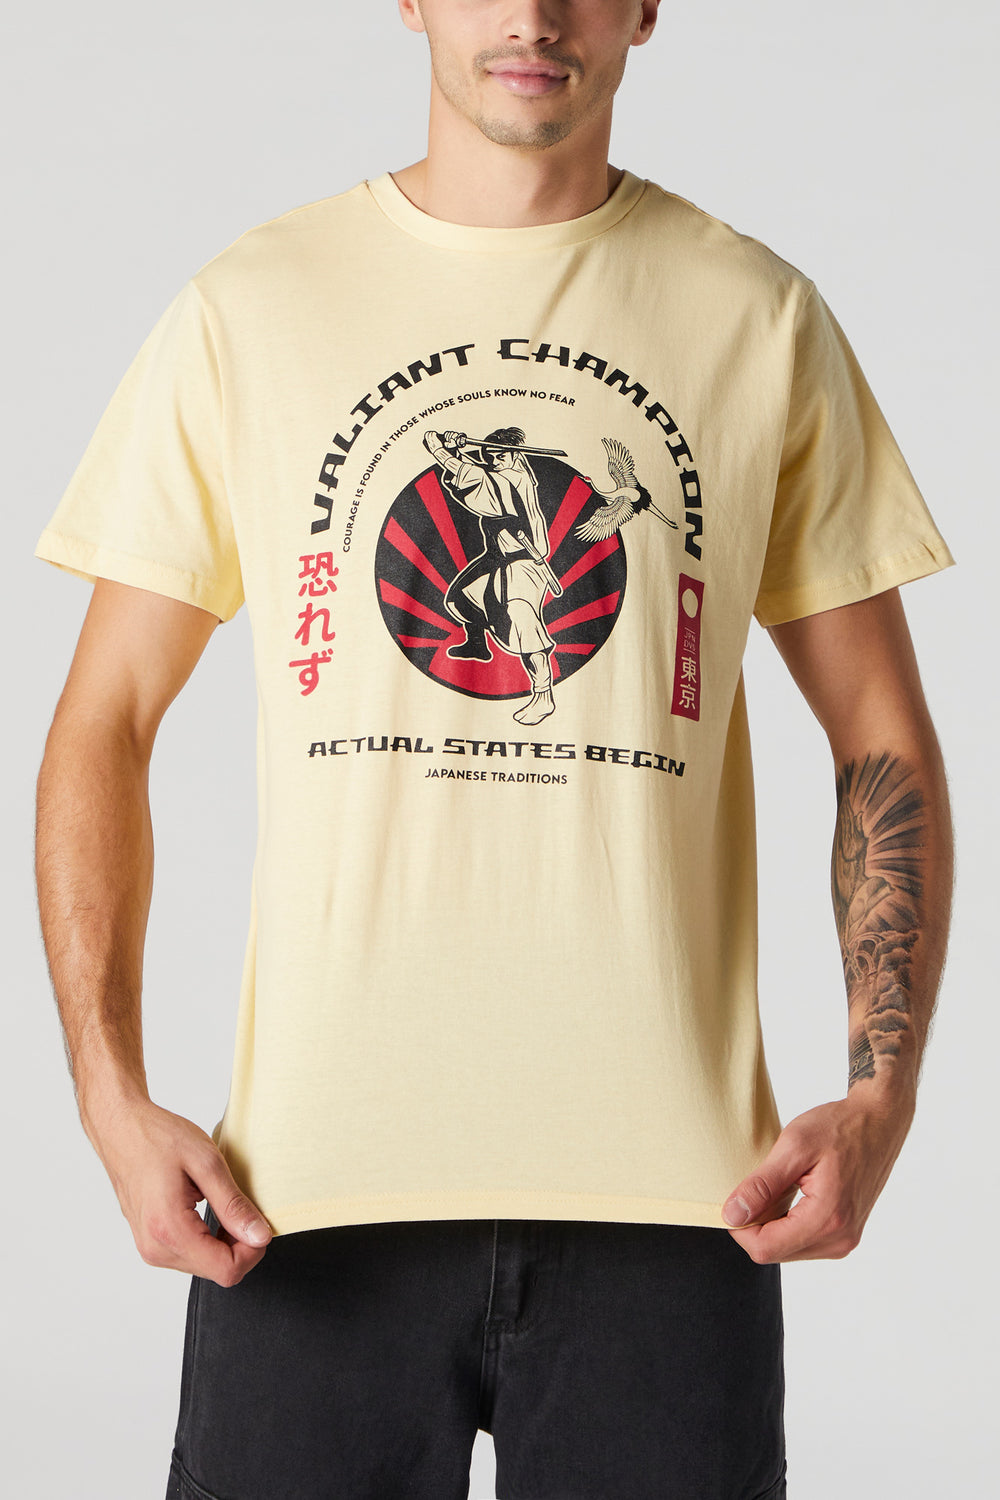 Samurai Champion Graphic T-Shirt Samurai Champion Graphic T-Shirt 1